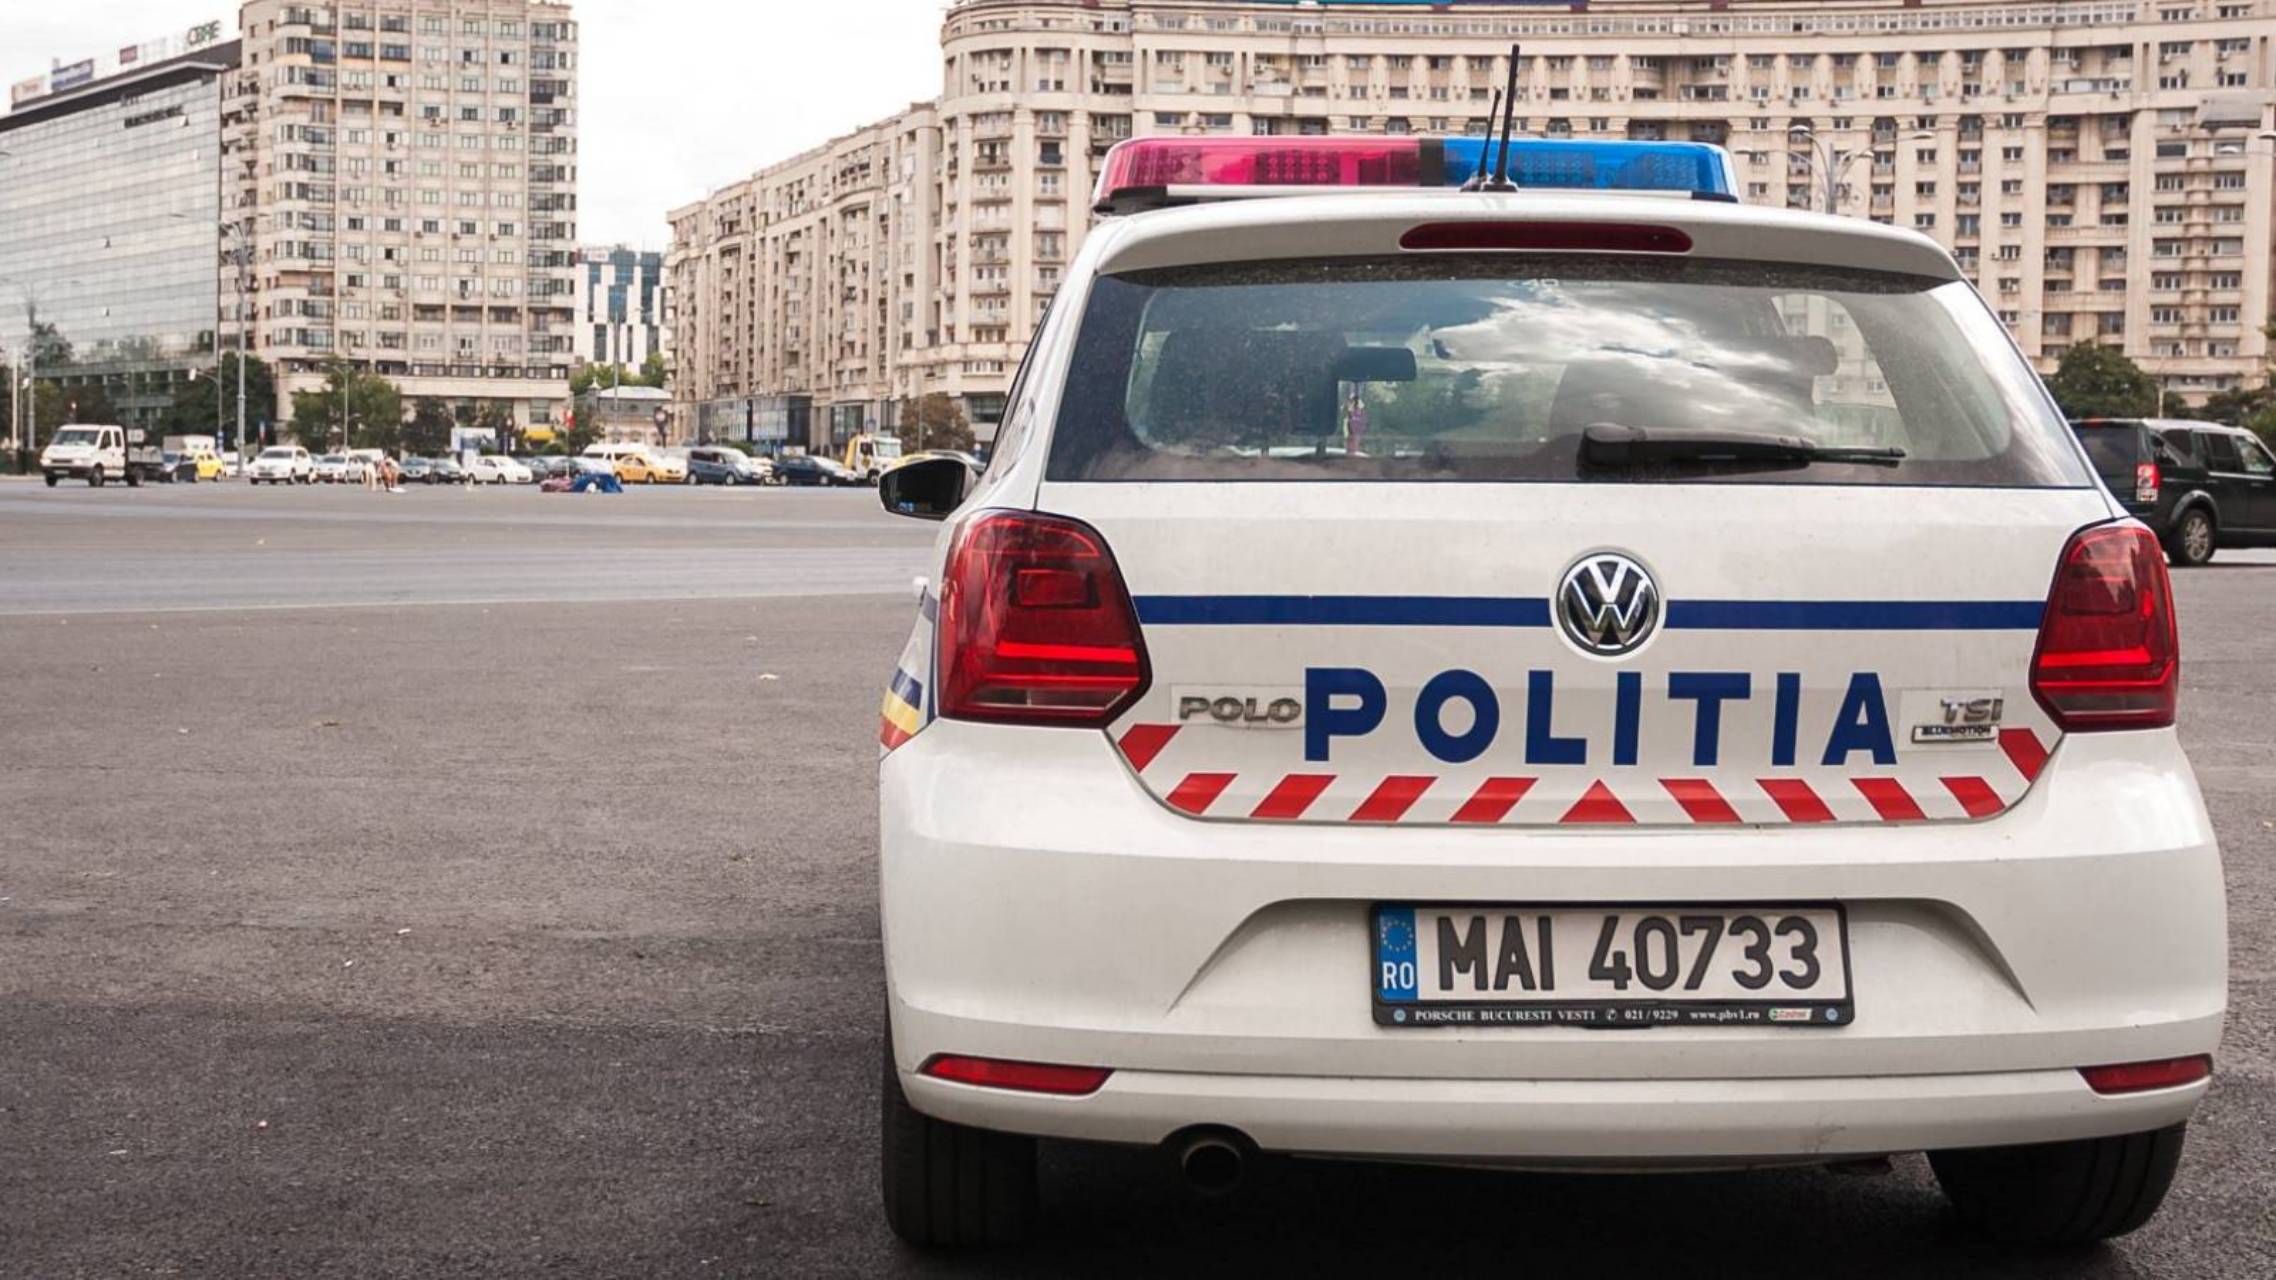 Rumänsk polis MILJONER rumäner